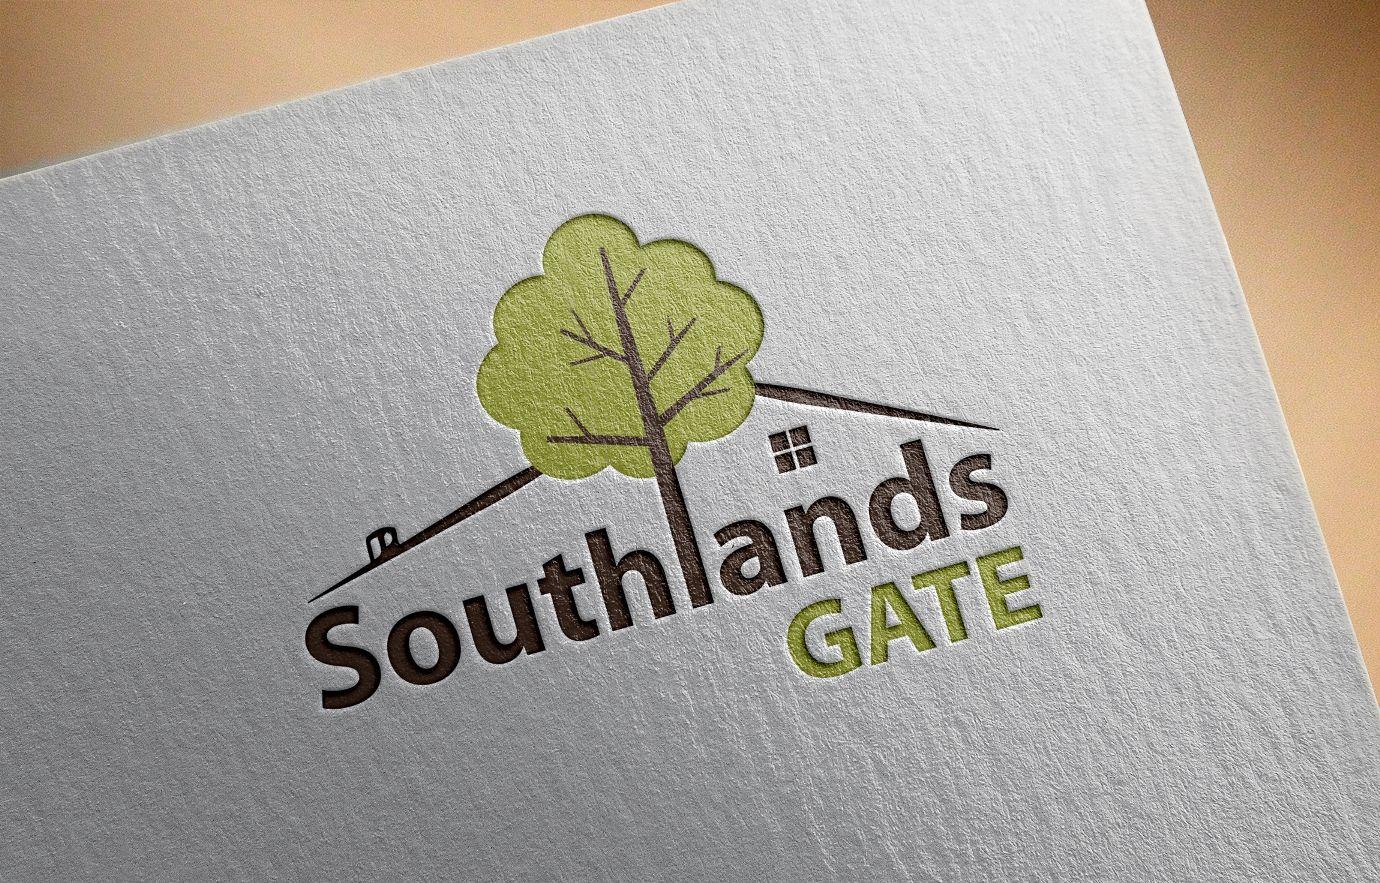 Gate Leaf Logo - Elegant, Playful, Real Estate Development Logo Design for Southlands